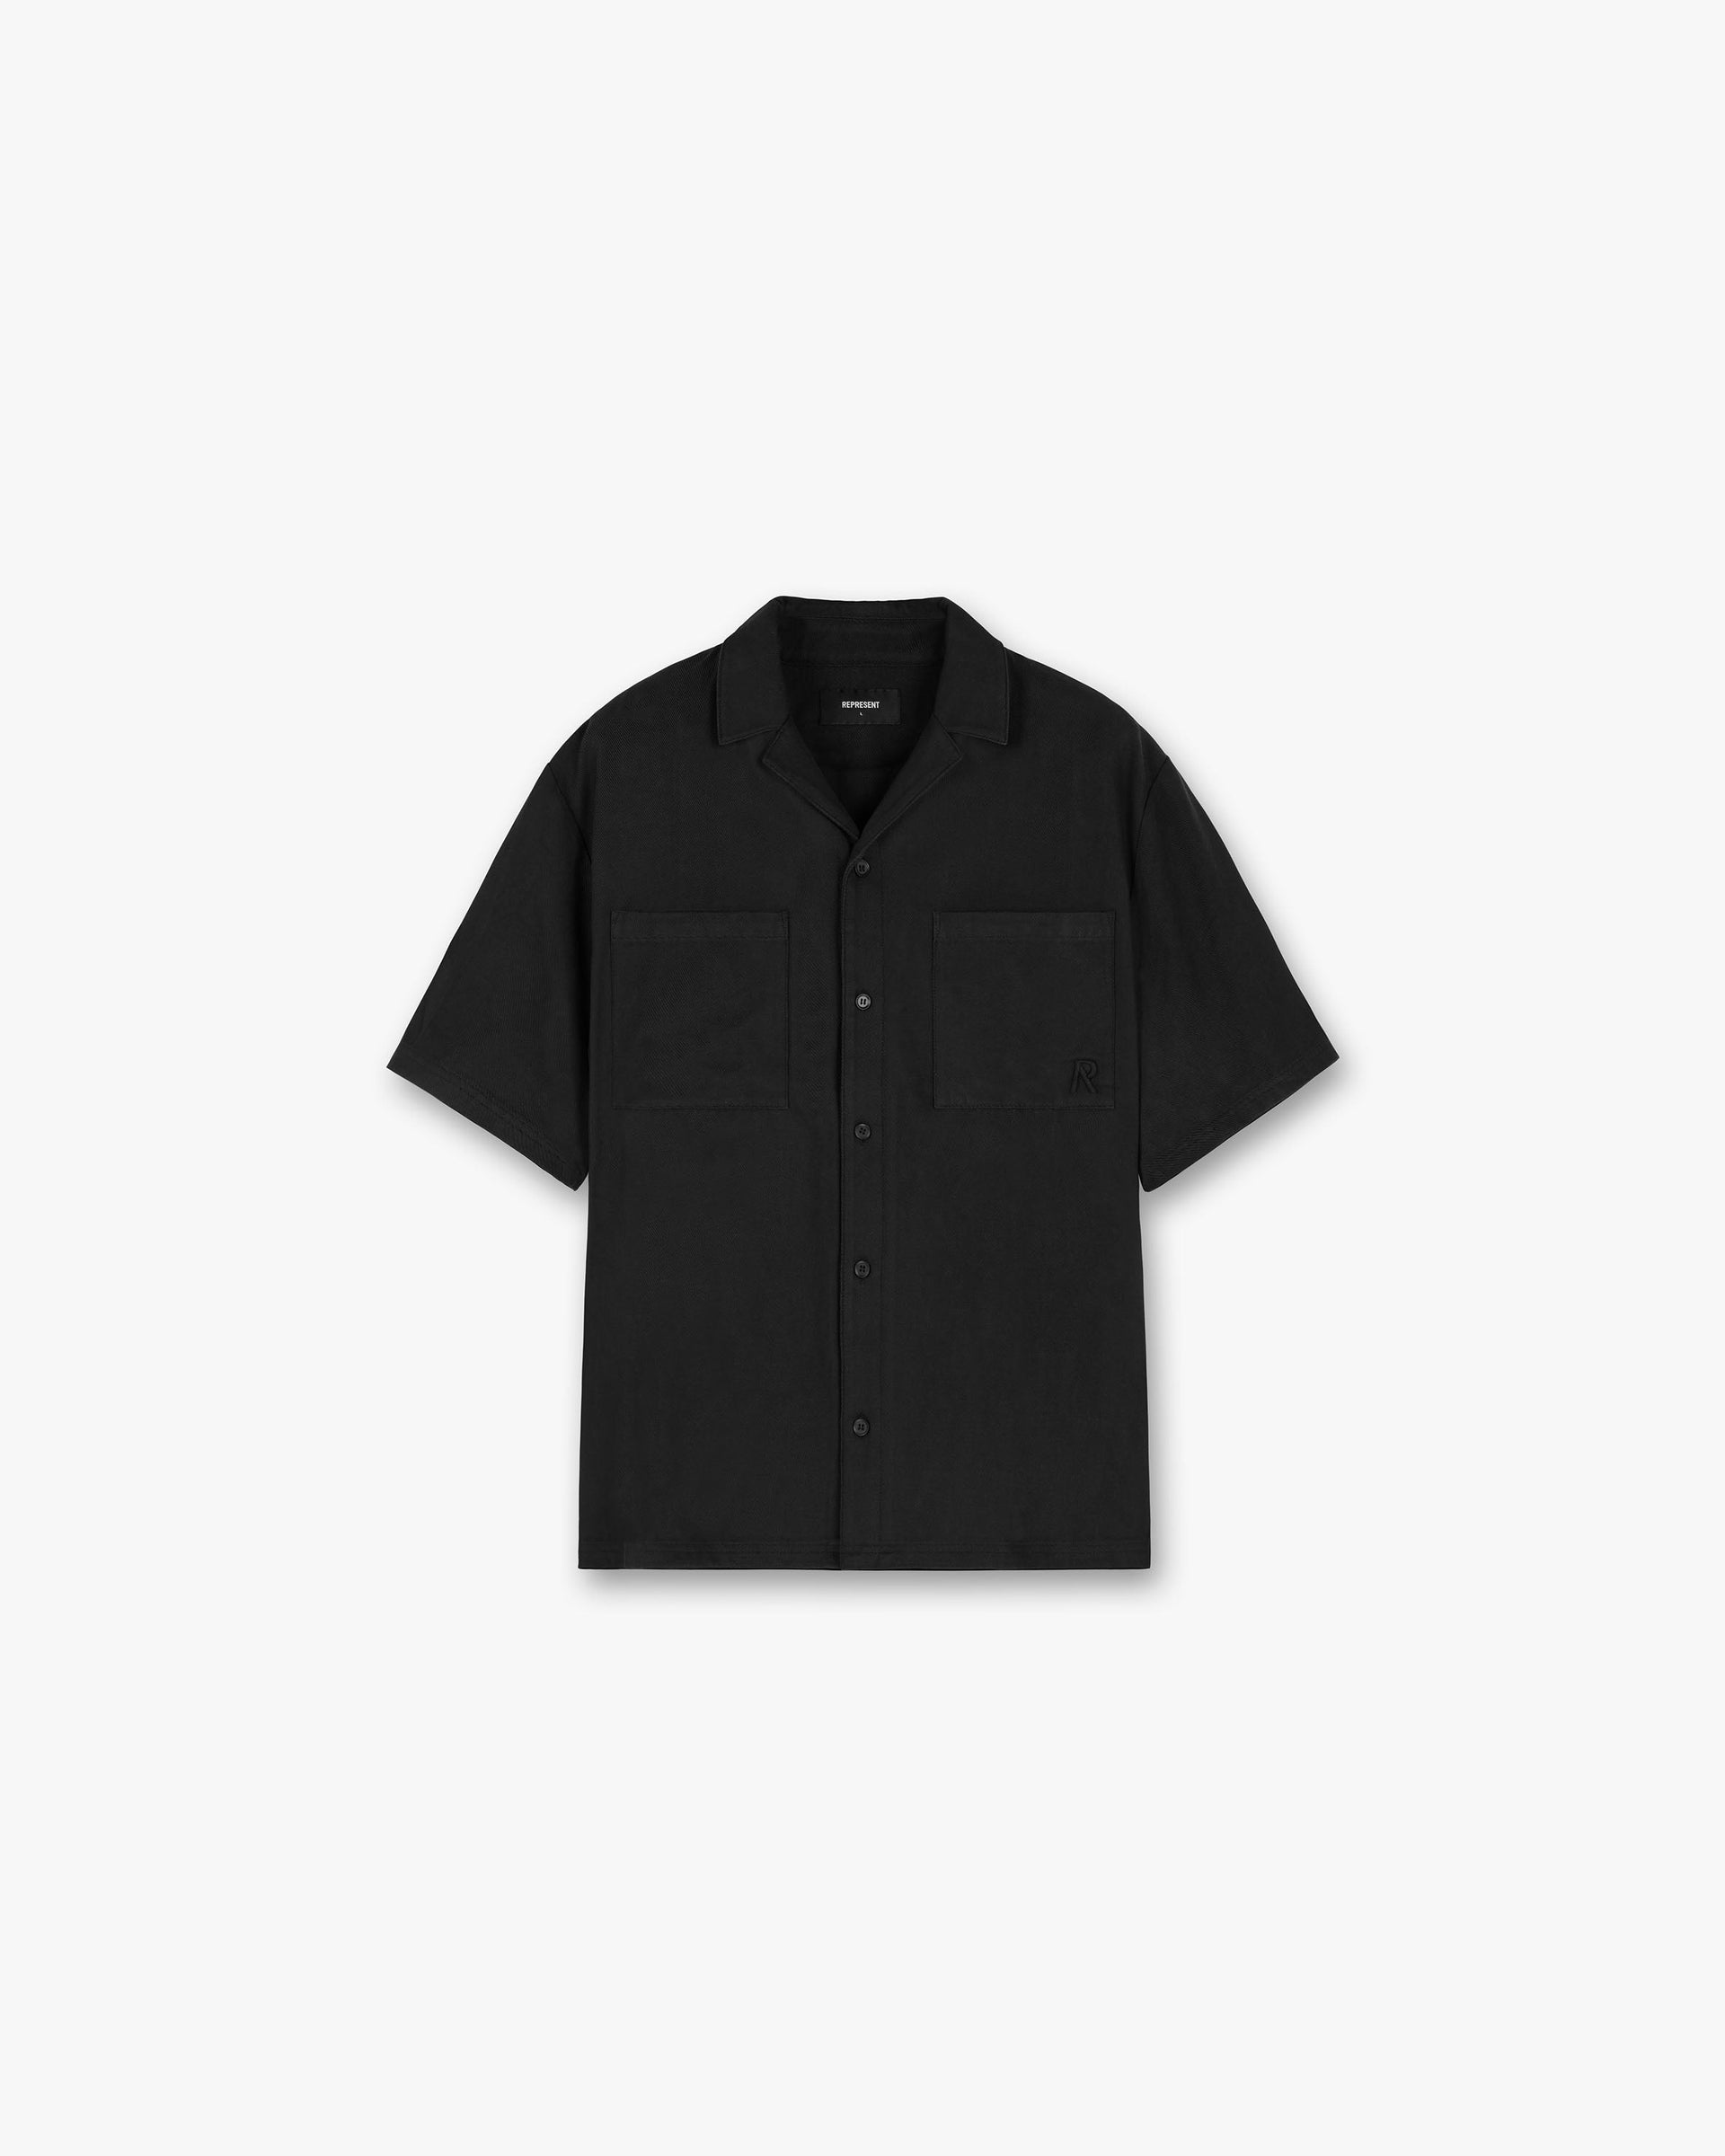 Yacht Shirt | Black Shirts SC23 | Represent Clo